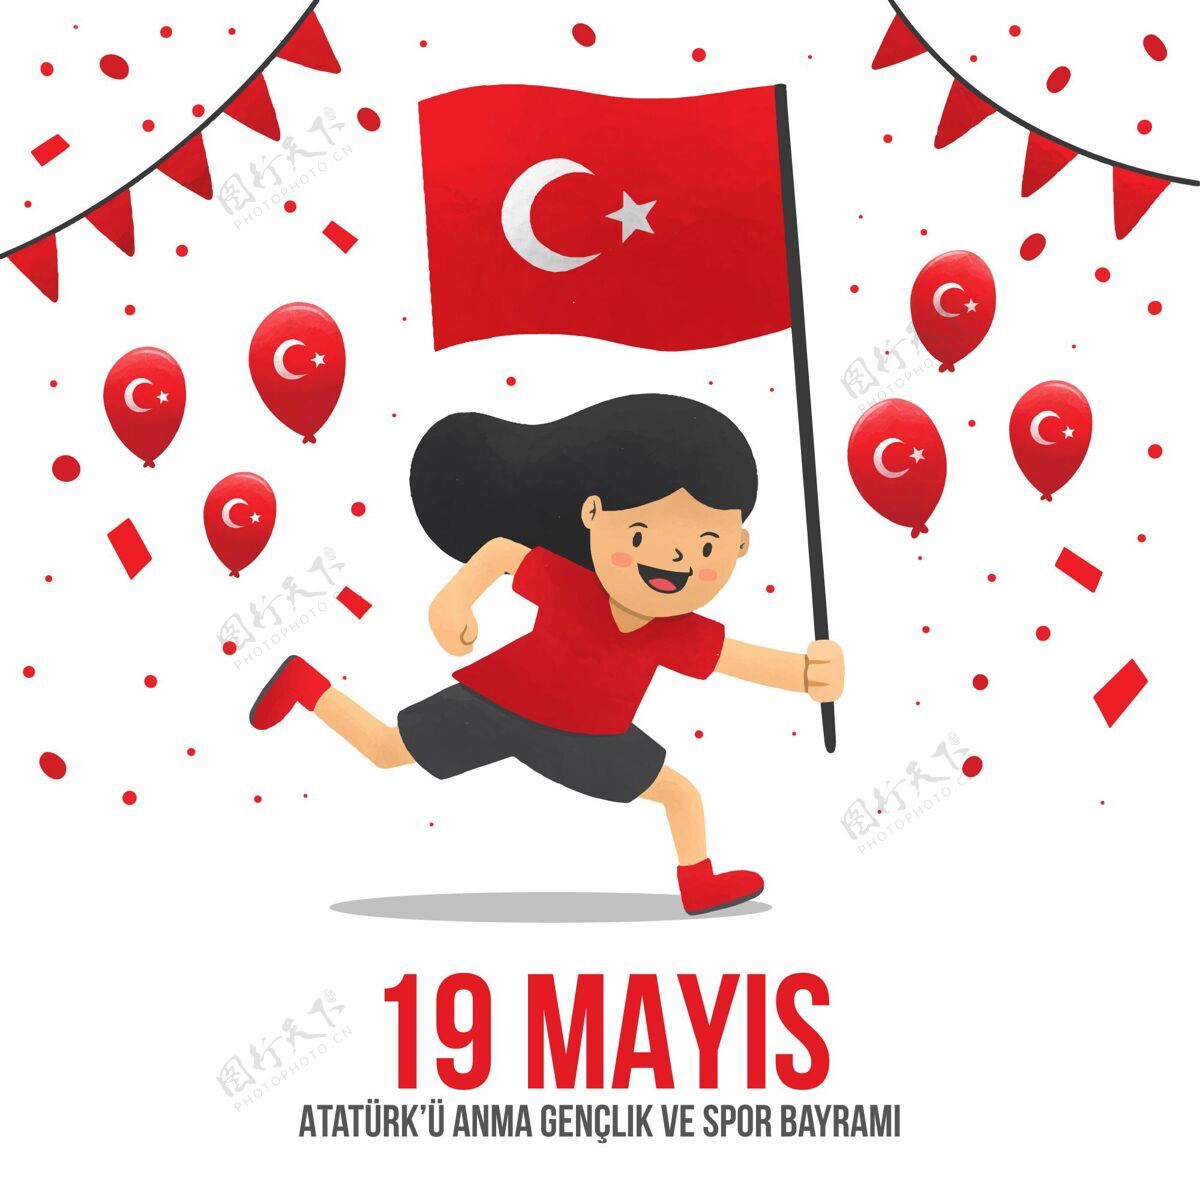 体育手绘土耳其纪念阿塔图克 青年和体育日插图国旗土耳其国旗土耳其